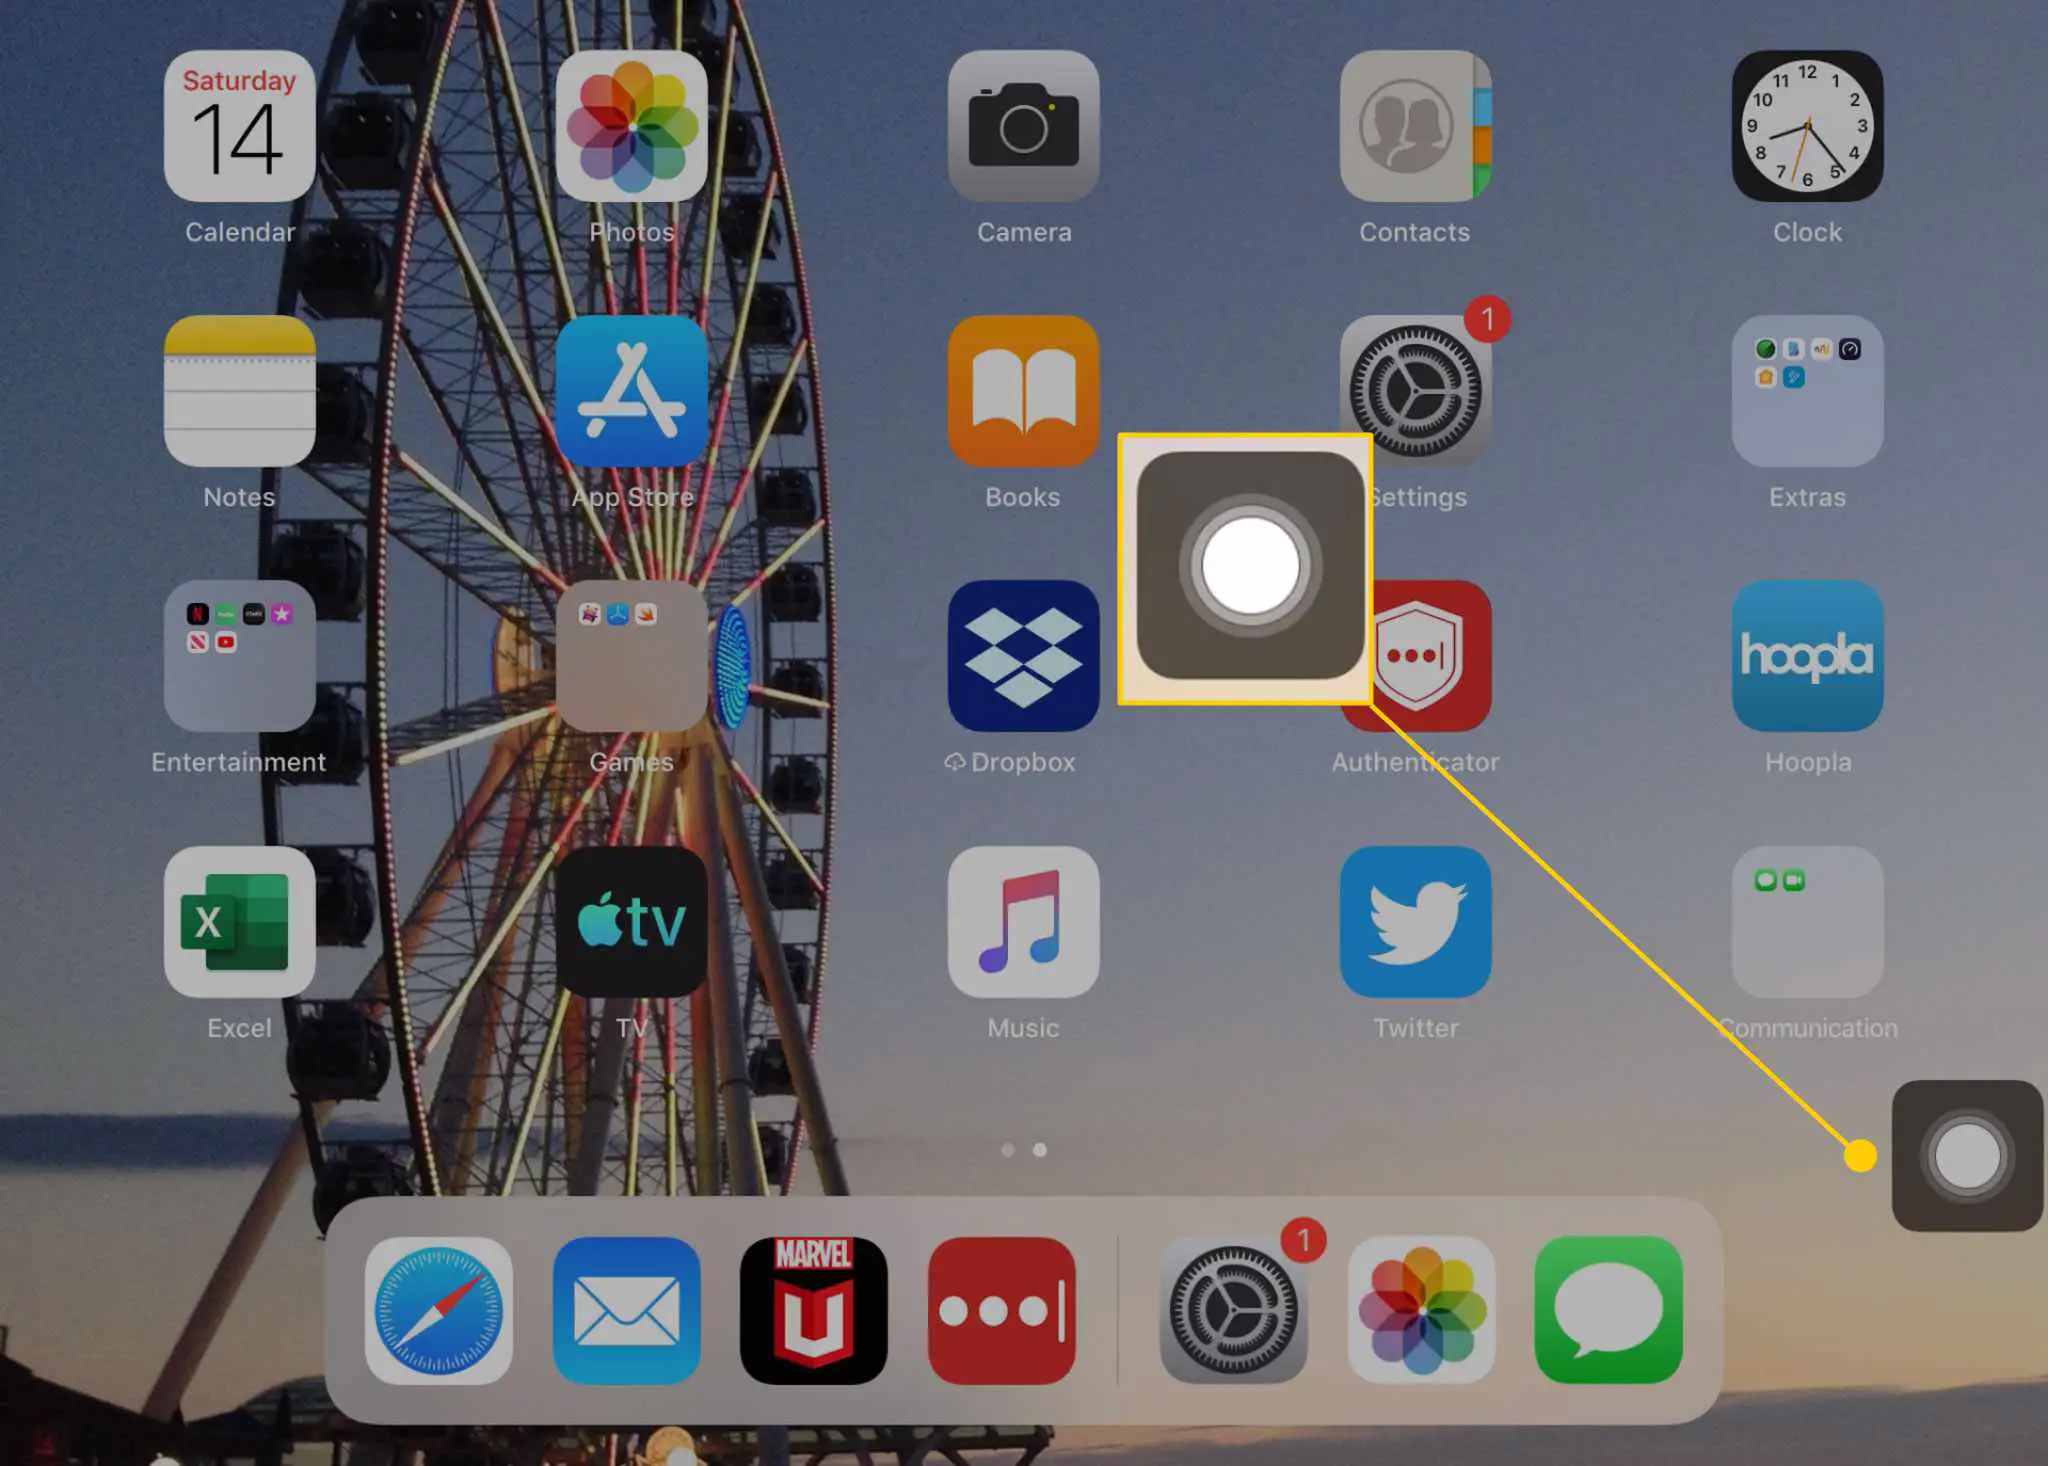 A tela inicial de um iPad com o botão AssistiveTouch destacado